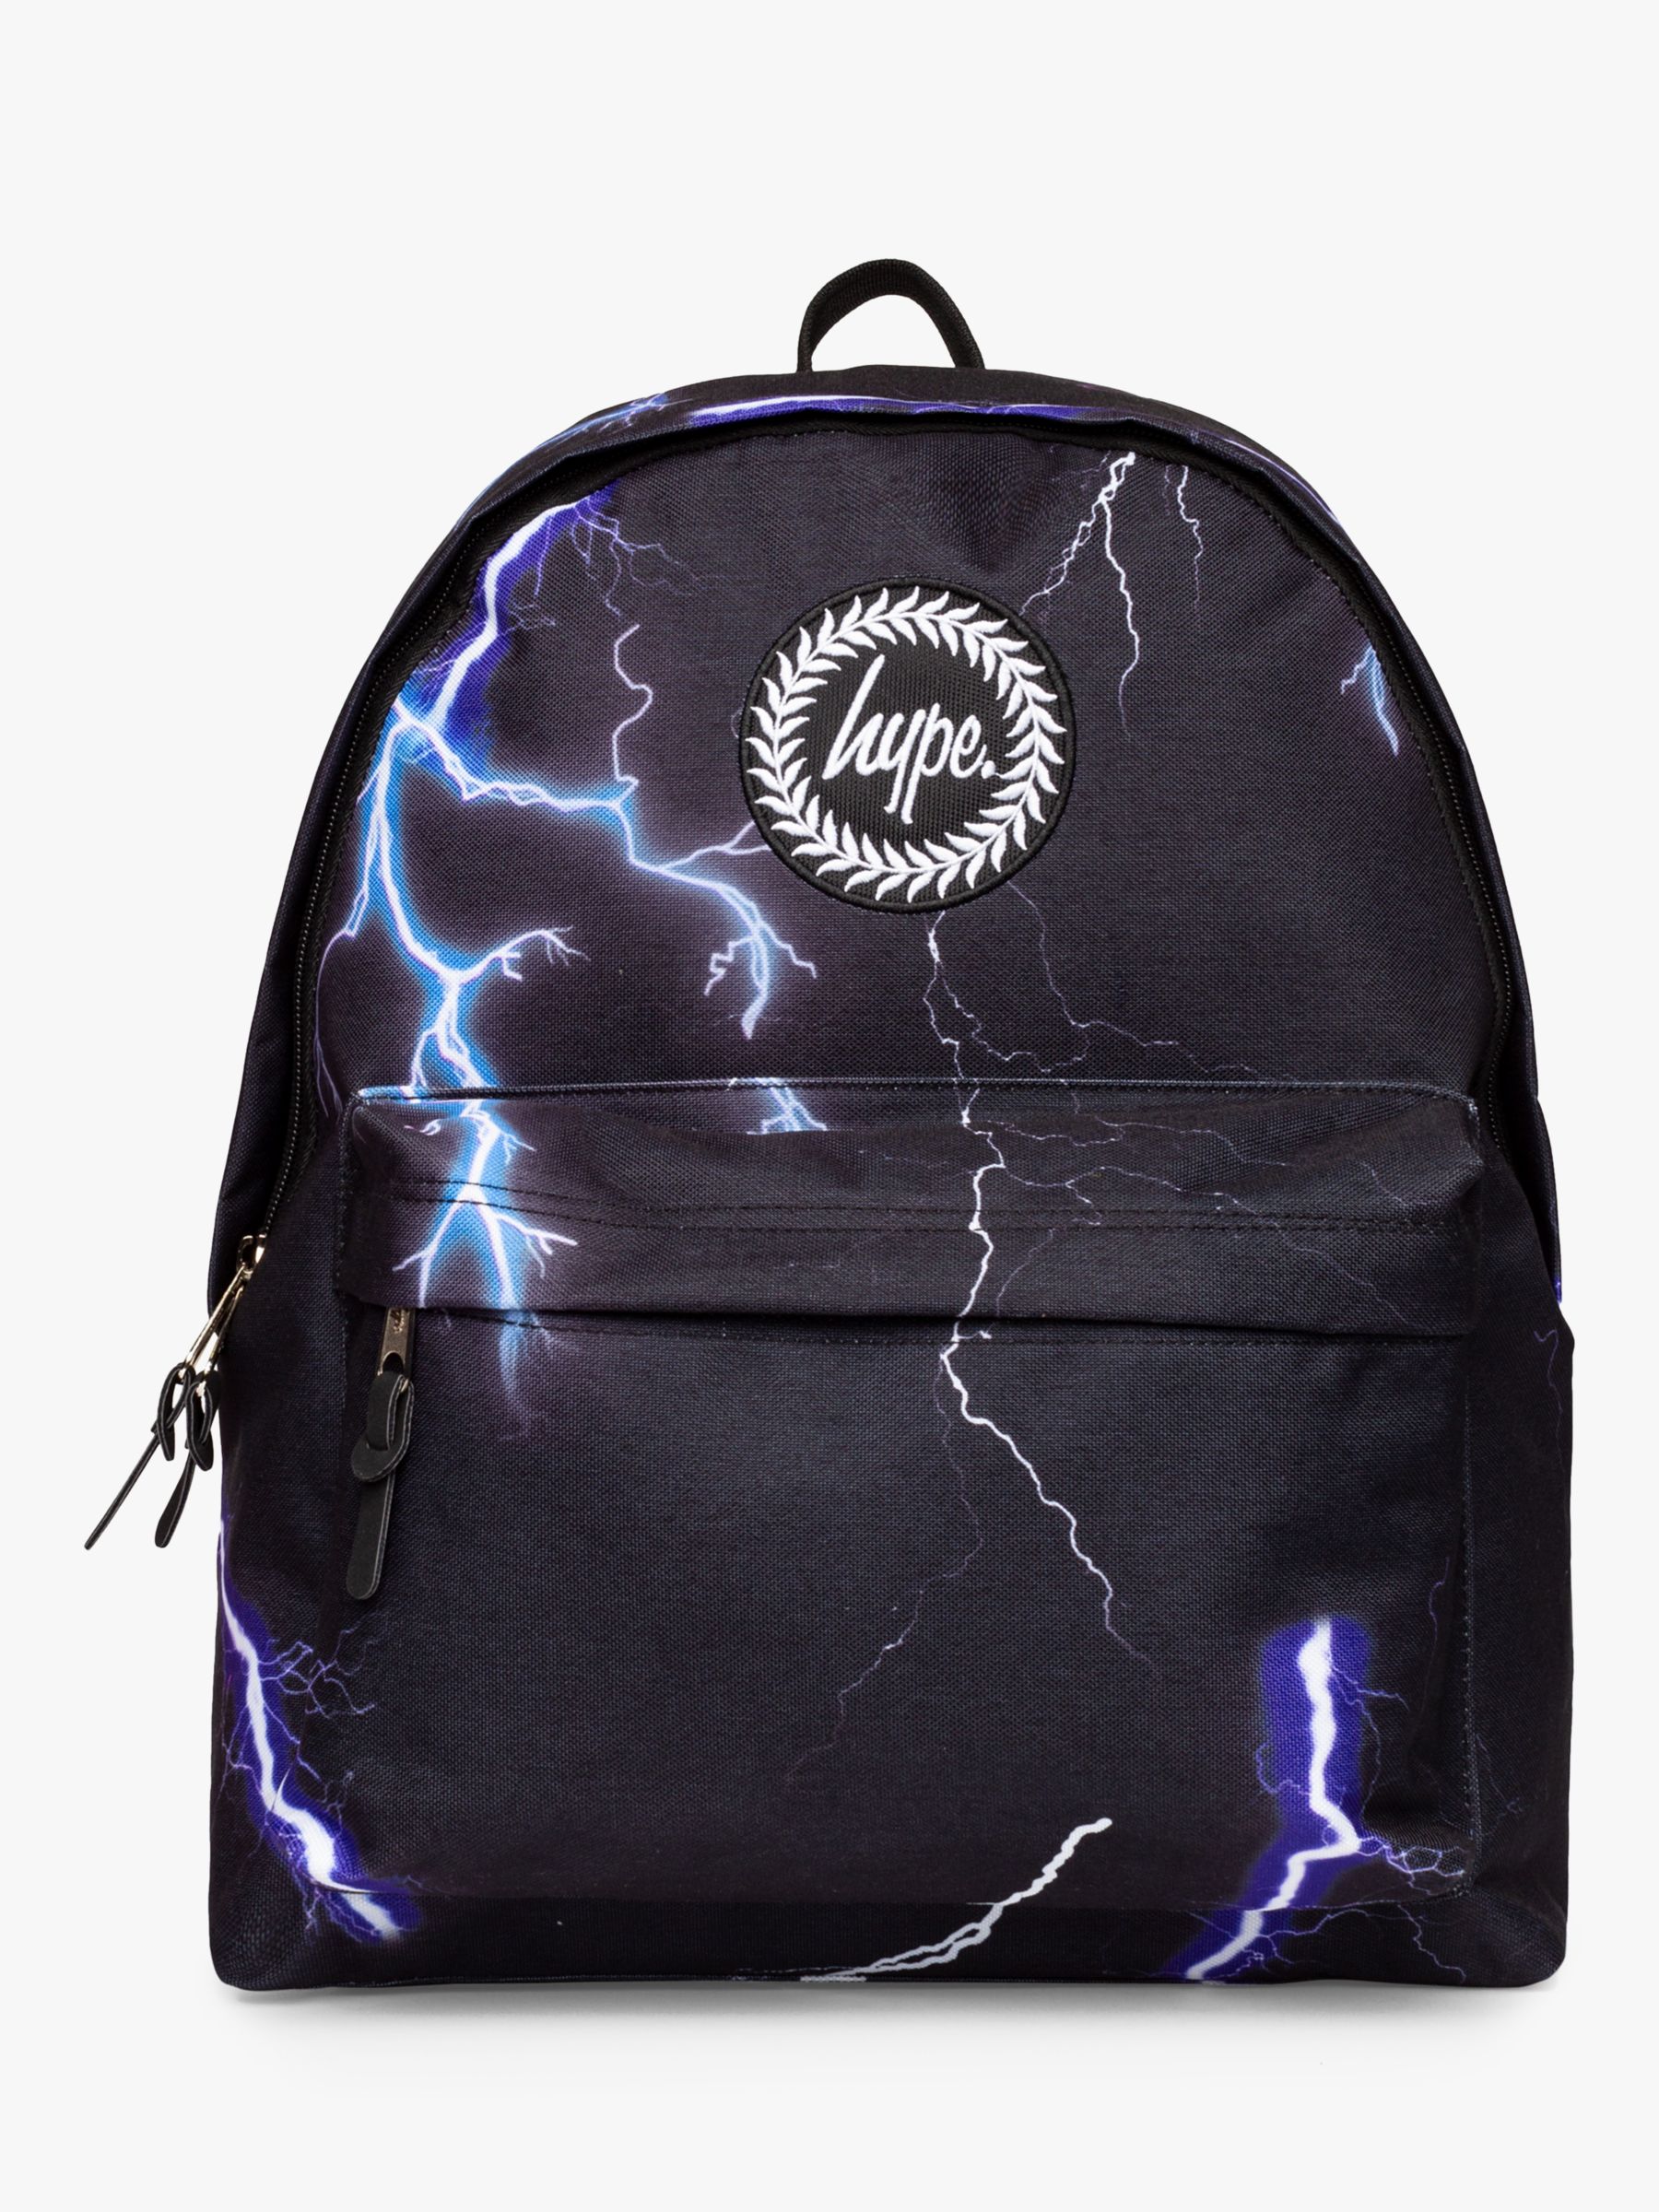 Hype Children's Lightning Backpack, Black